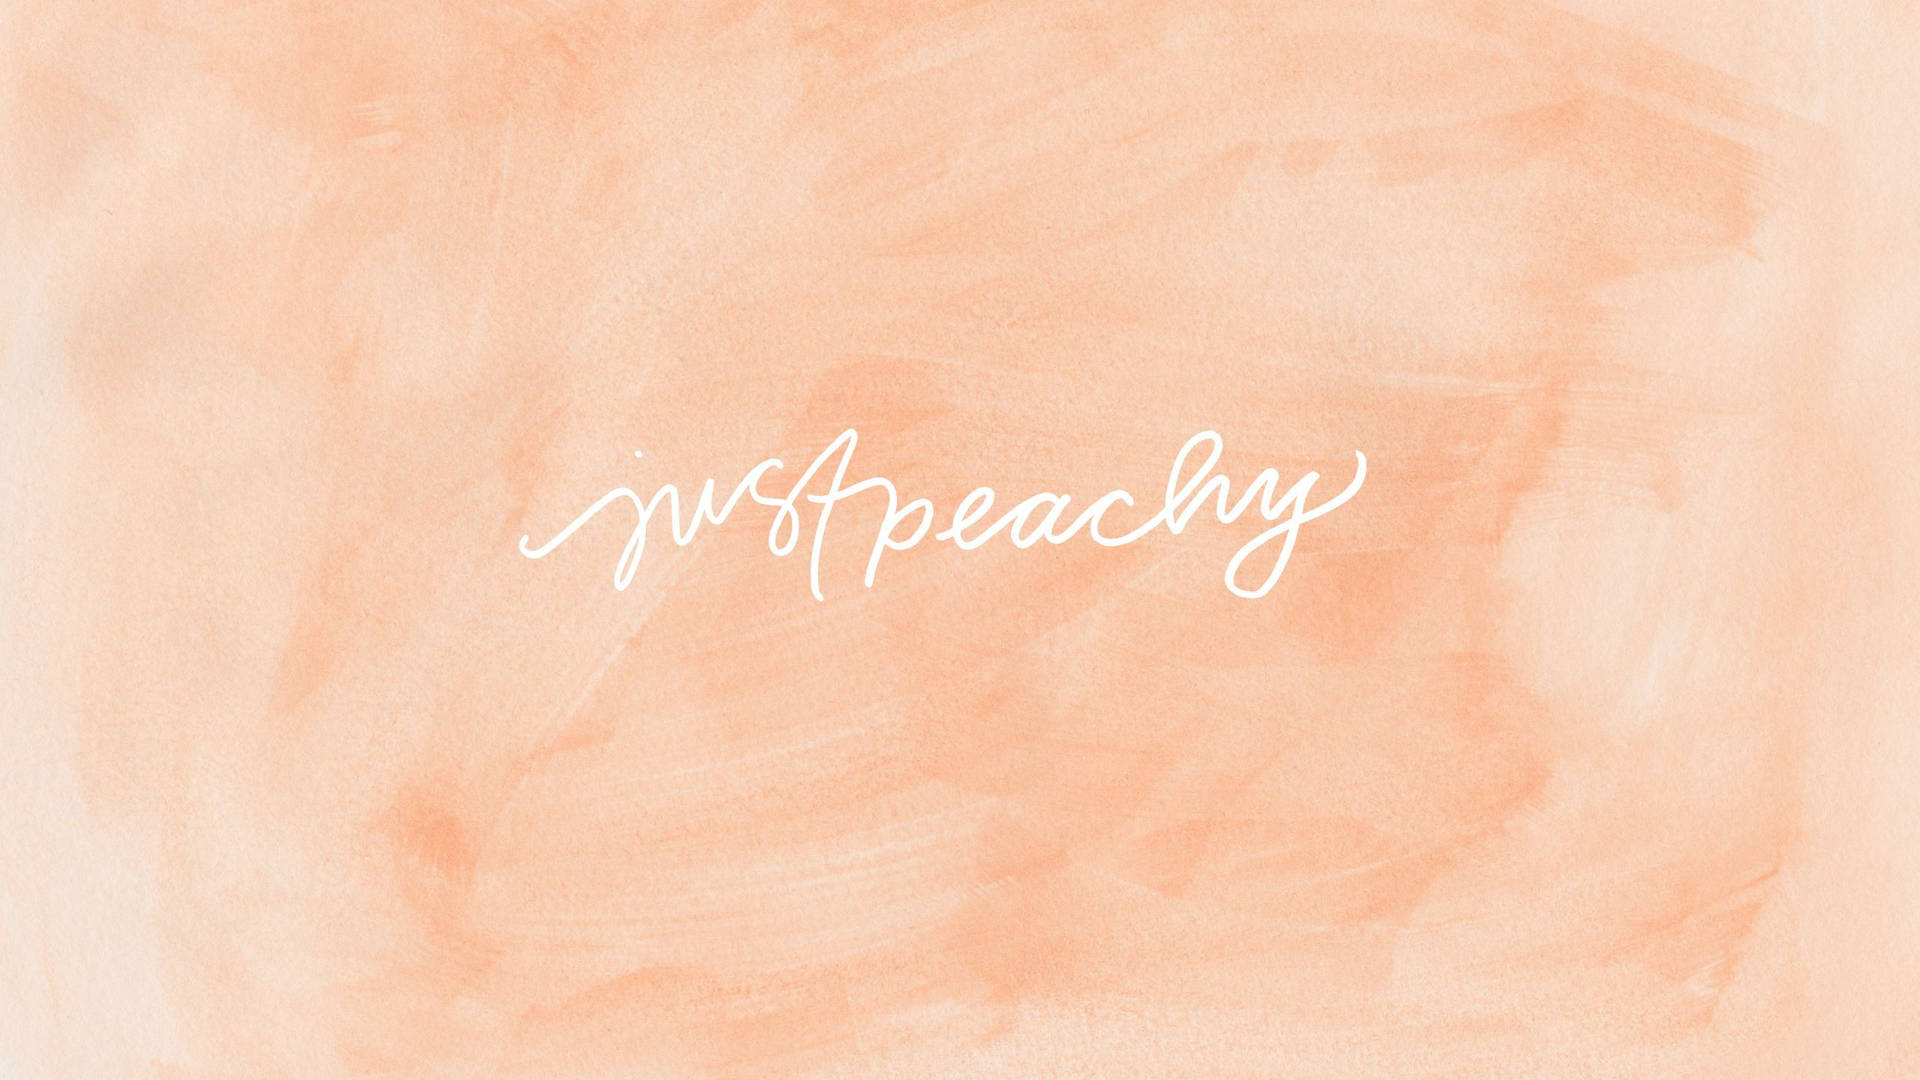 Bare Peachy Tekst Peach Estetisk. Wallpaper